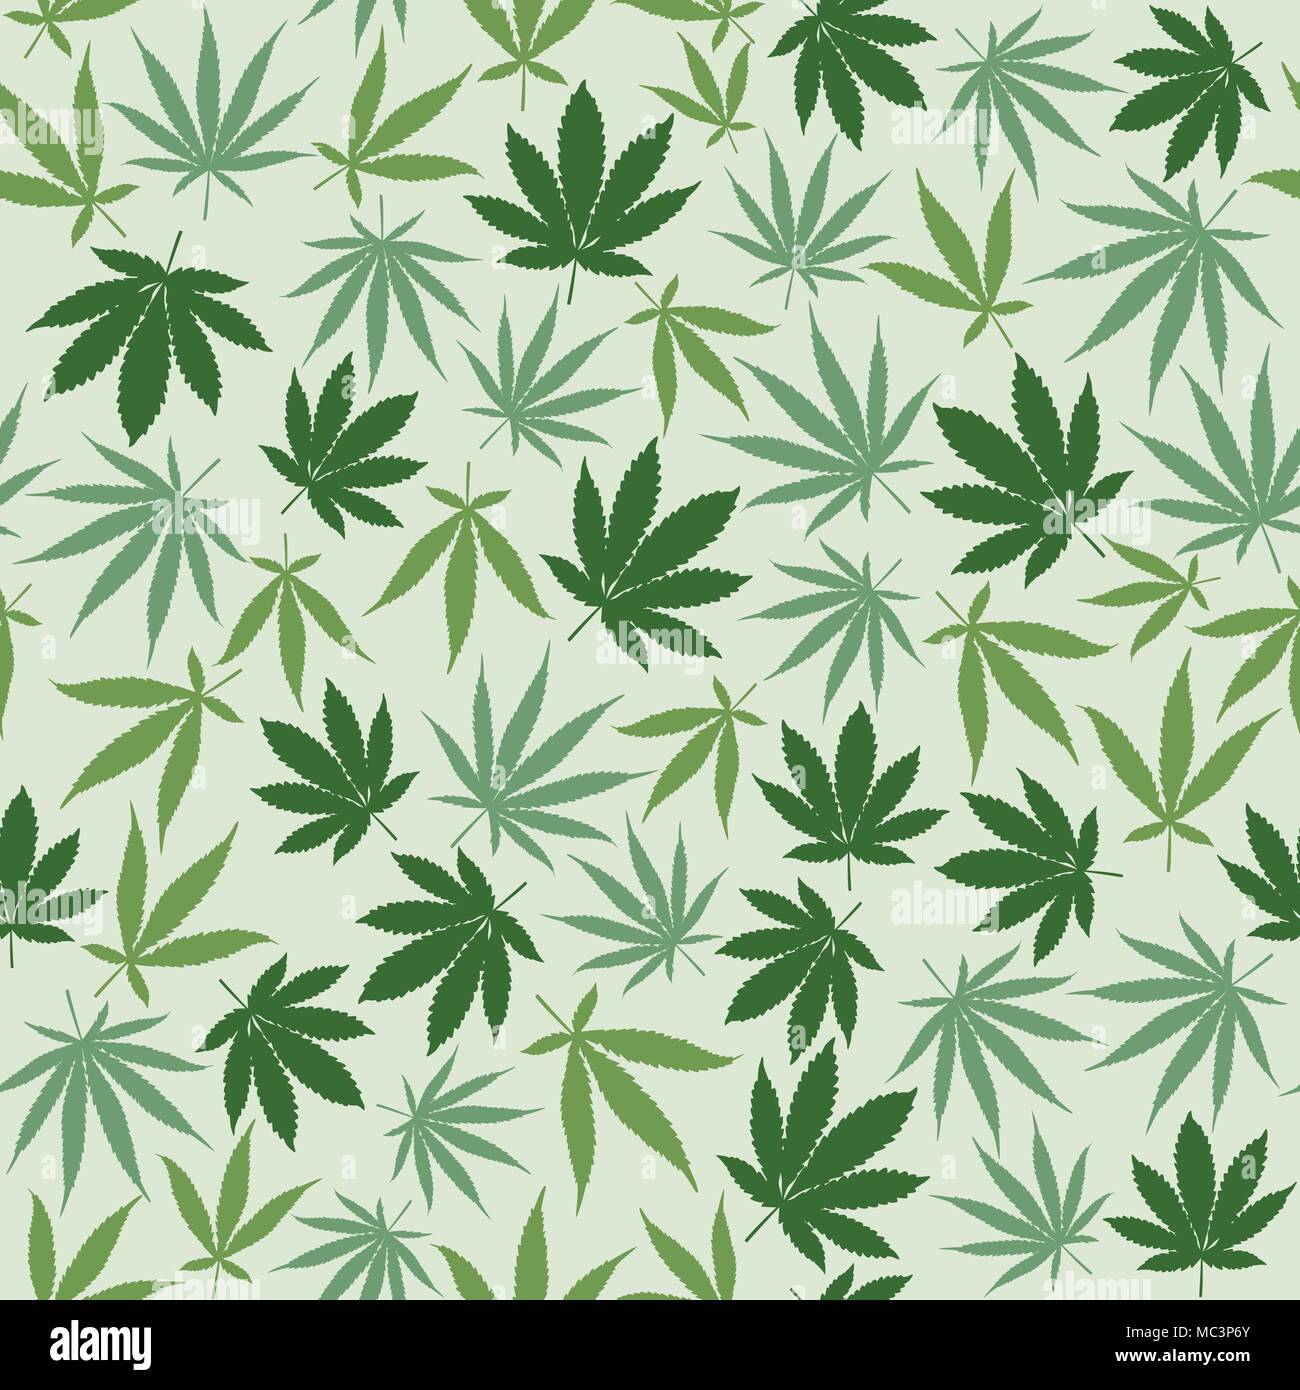 Trama de fondo sin fisuras de cáñamo con diferentes hojas, hierbas medicinales y concepto de cannabis Ilustración del Vector